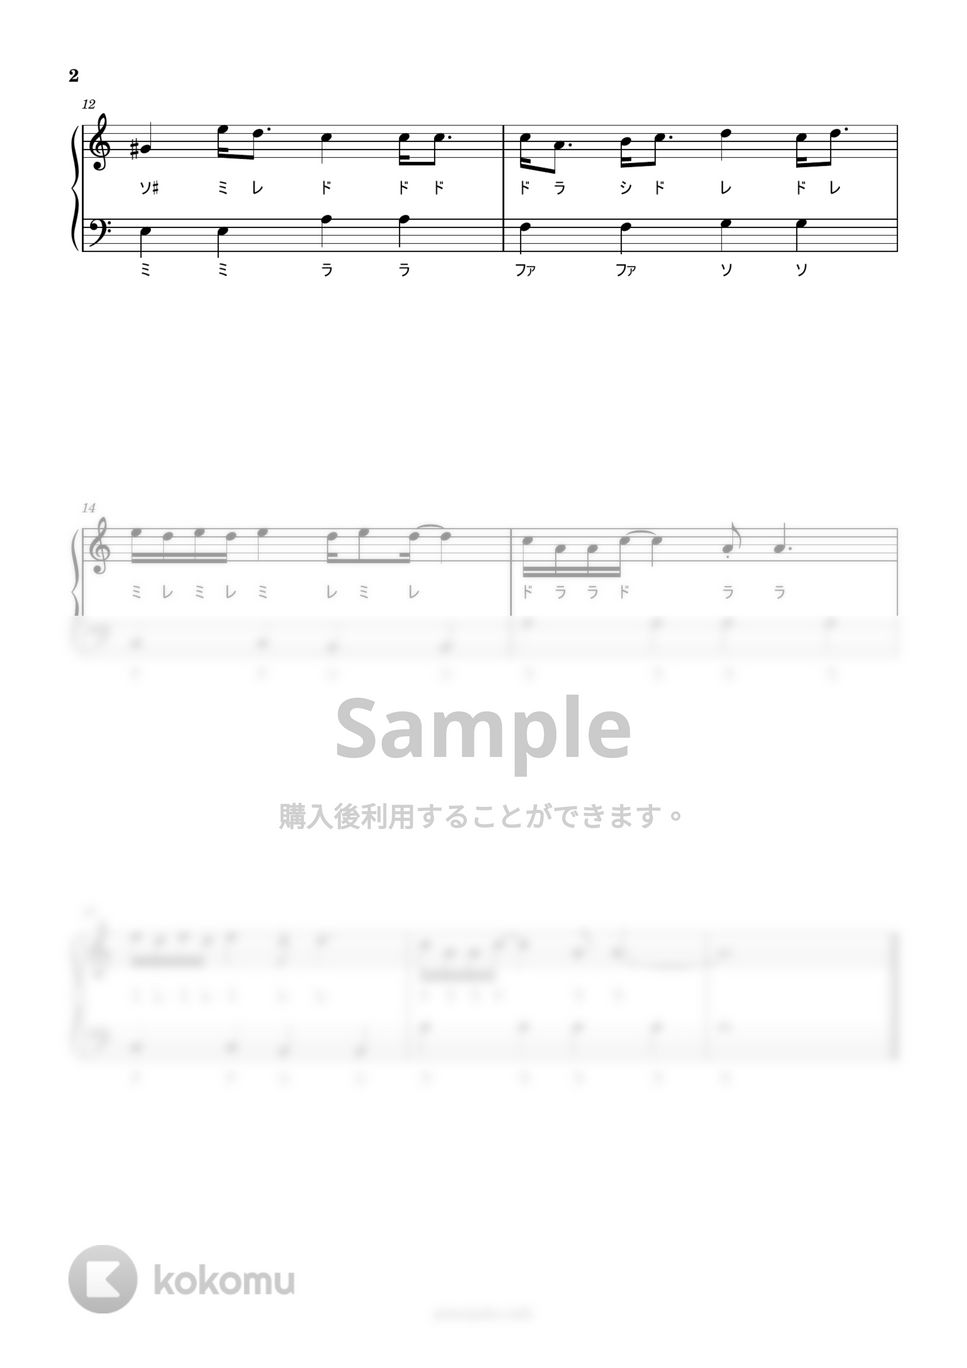 イルカ - なごり雪 (ドレミ付き簡単楽譜) by ピアノ塾